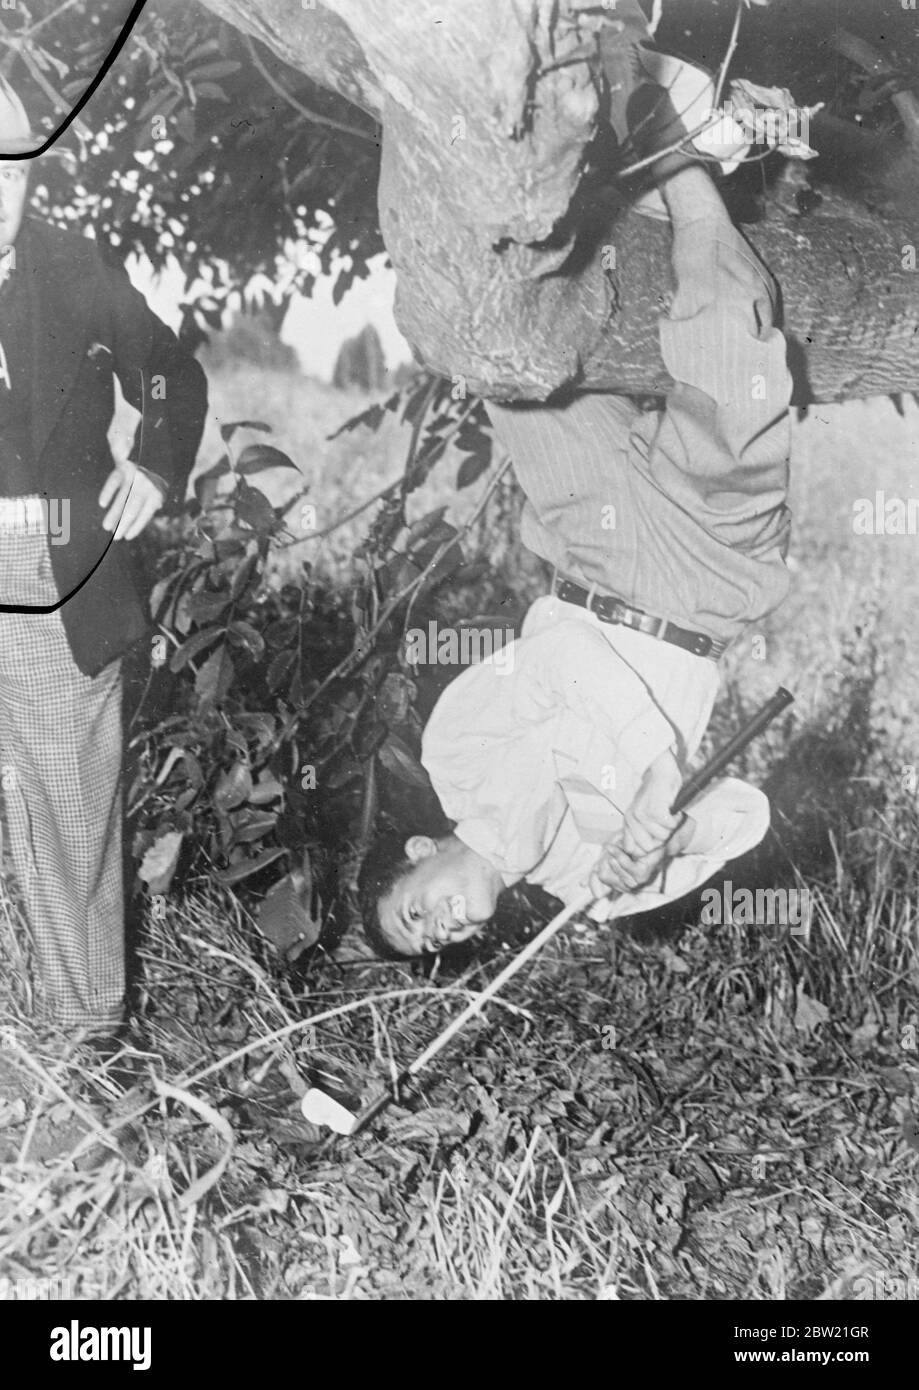 Frank Strafaol, seine Beine um einen Baum gekräuselt, nimmt eine Affen-ähnliche Haltung, wie er einen genialen Schuss während einer Golfmeisterschaft im Alderwood Country Club, Portland Oregon, USA. September 1937.[?] Stockfoto